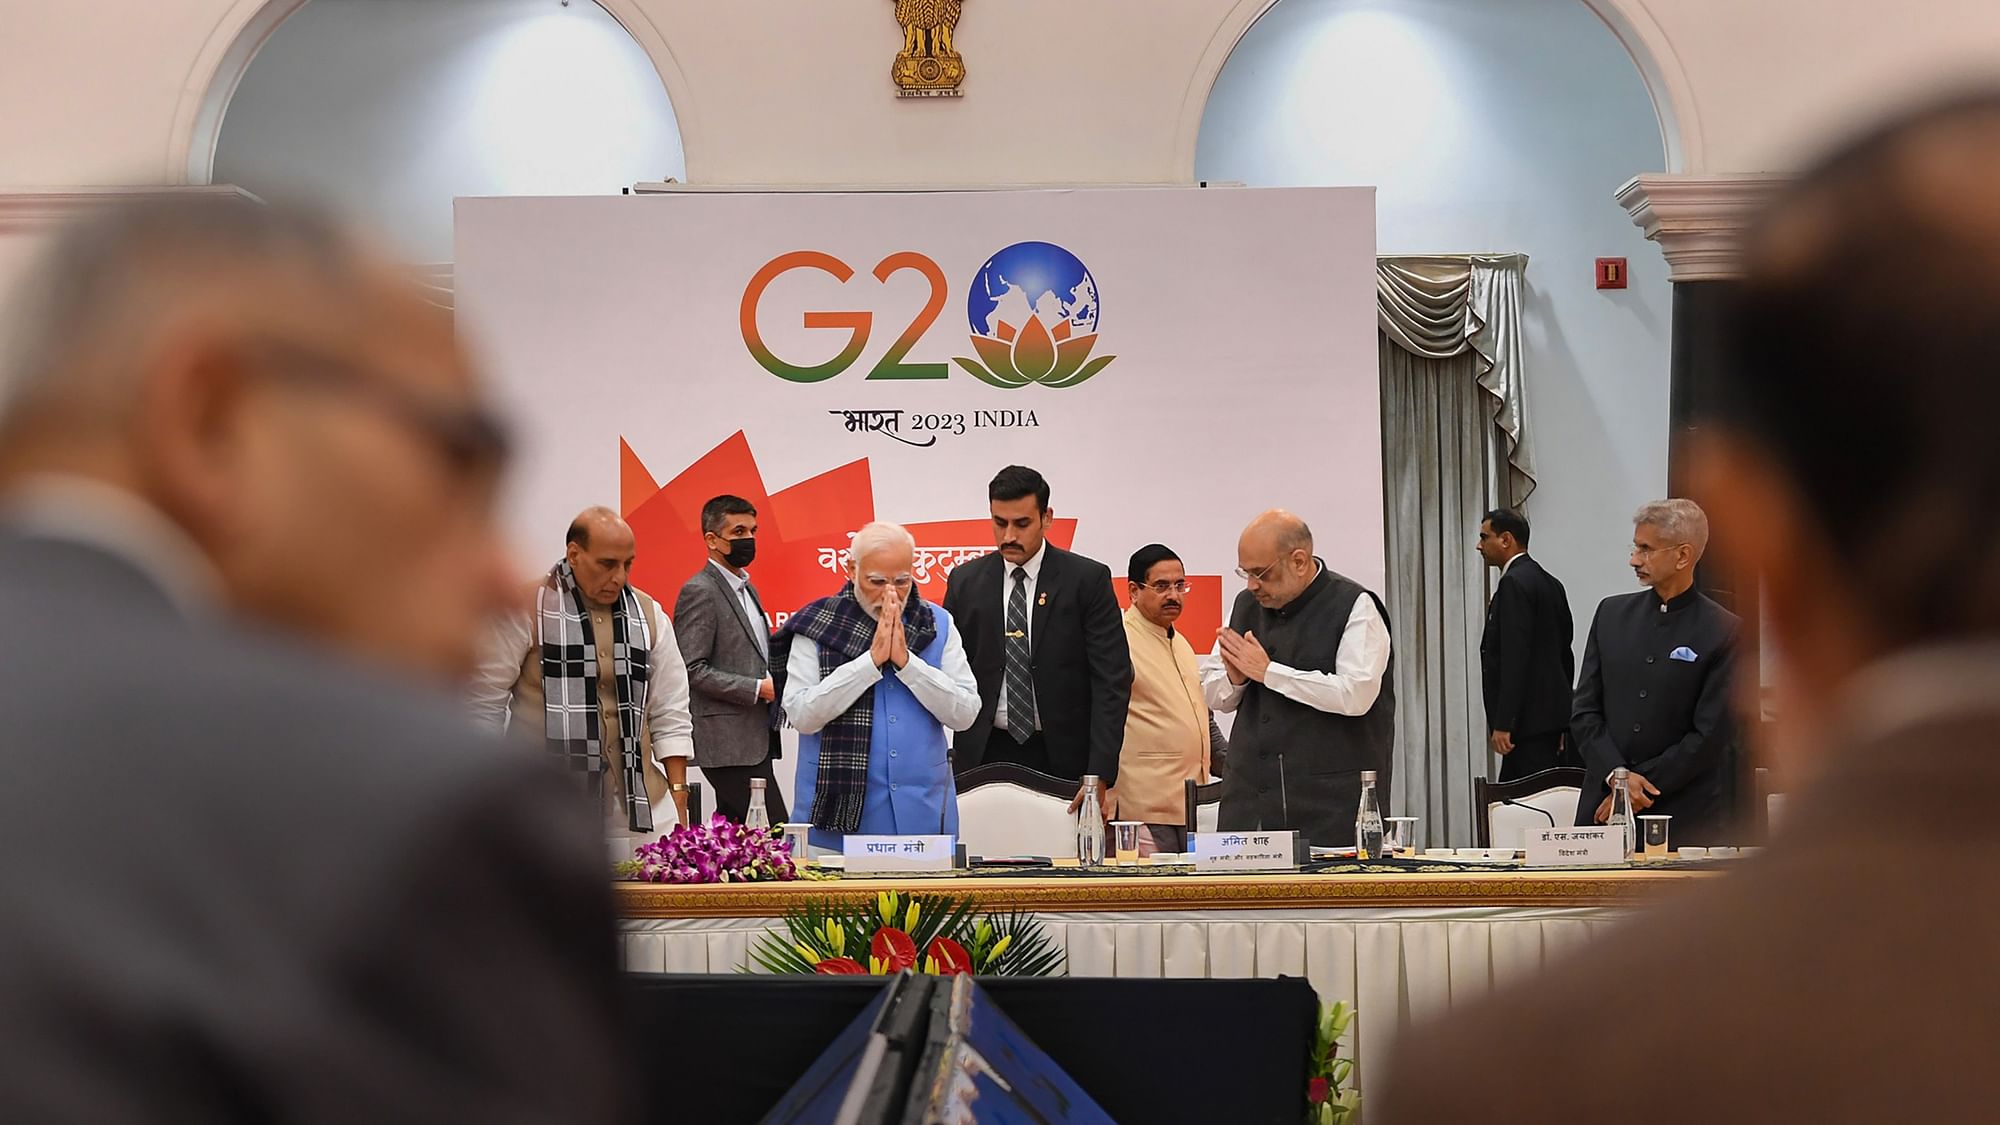 <div class="paragraphs"><p>5 दिसंबर को प्रधानमंत्री नरेंद्र मोदी ने नई दिल्ली में G20 समिट पर सर्वदलीय बैठक में हिस्सा लिया</p></div>